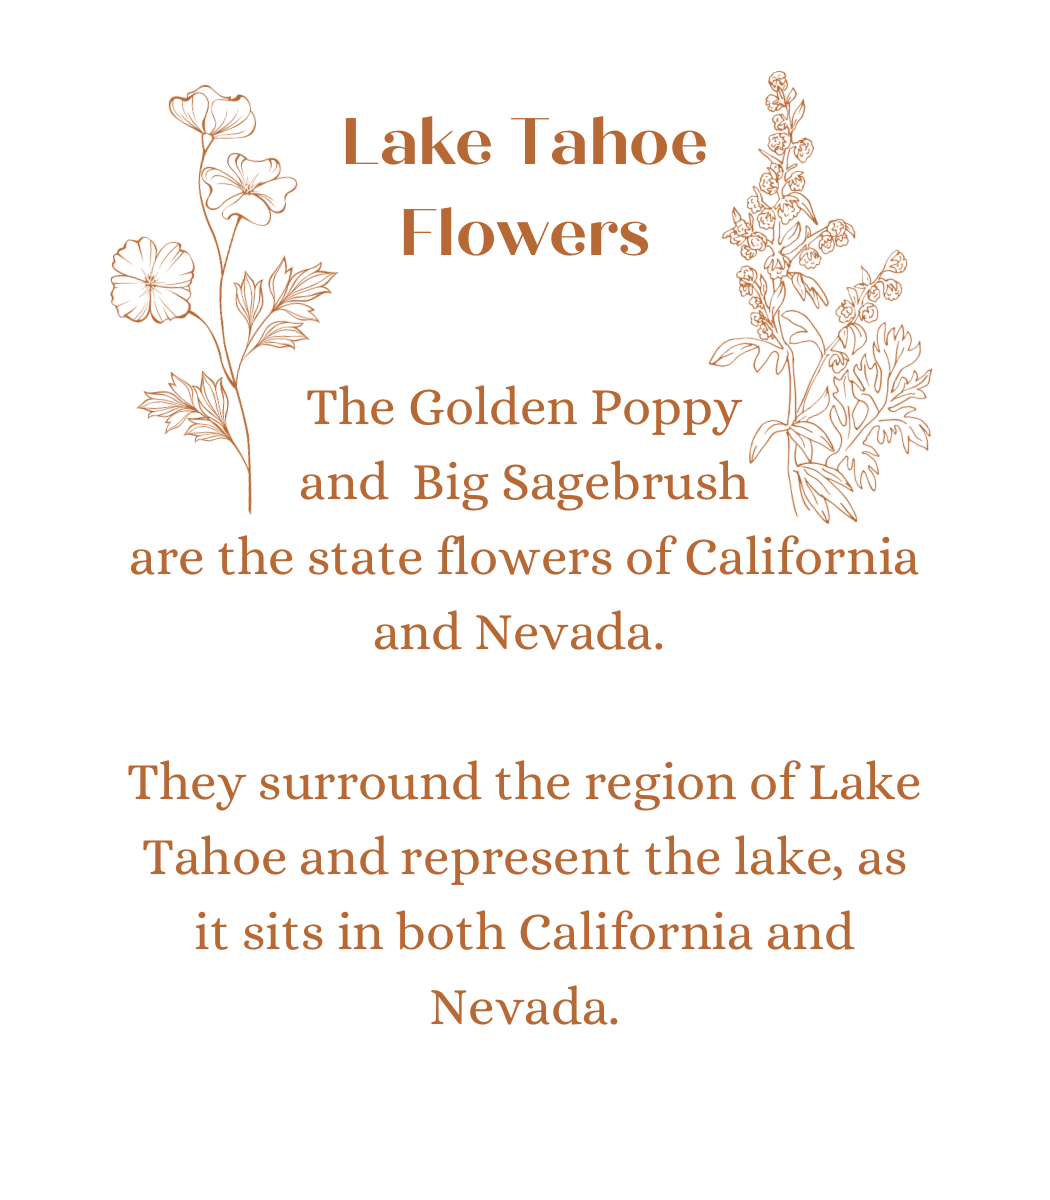 Lake Tahoe Flowers in Freya